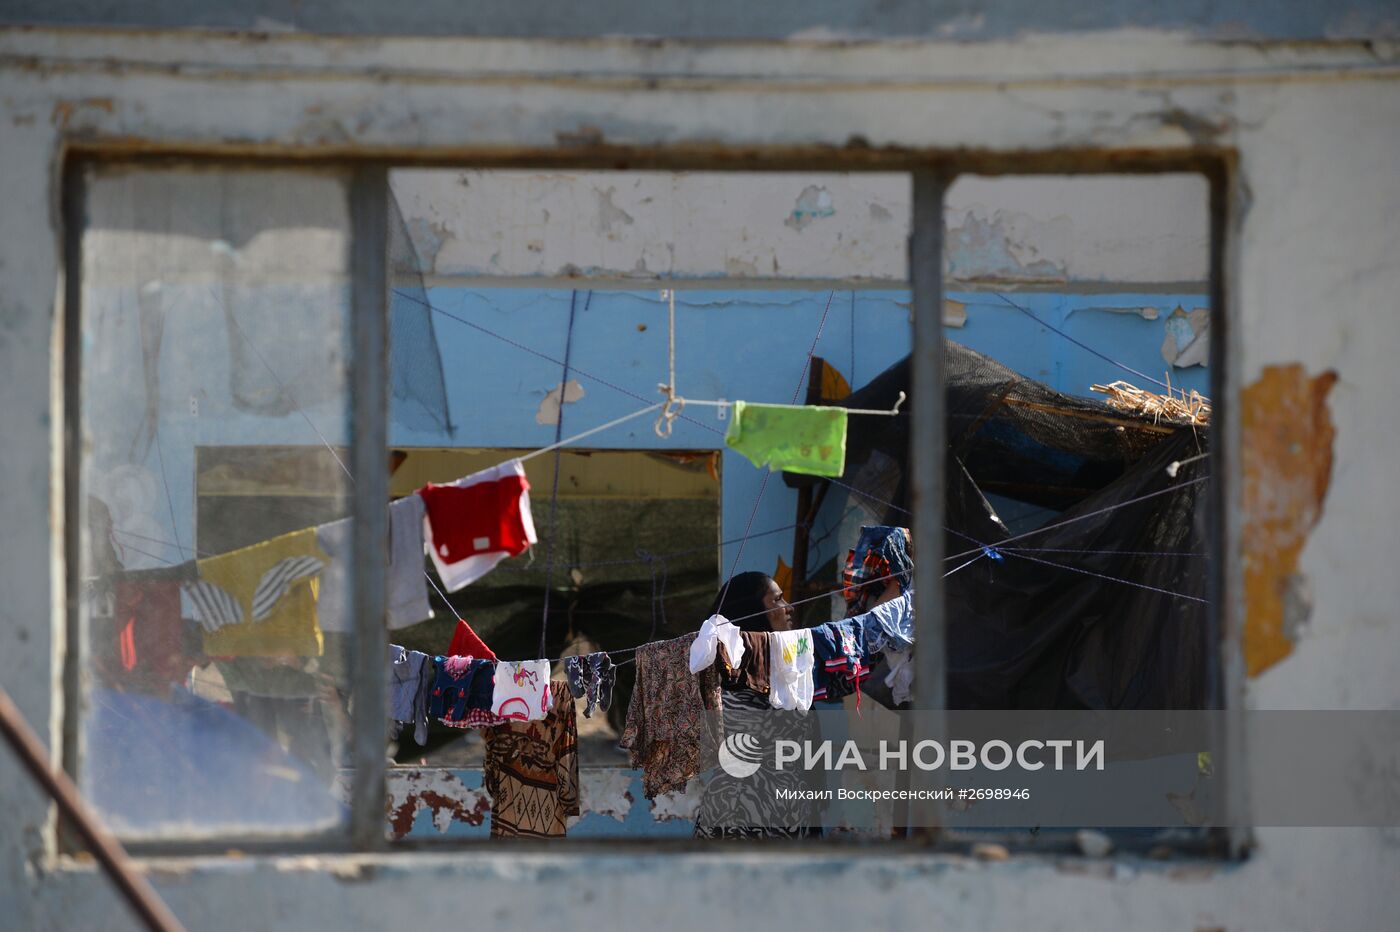 Лагерь беженцев с Ближнего Востока на острове Лесбос